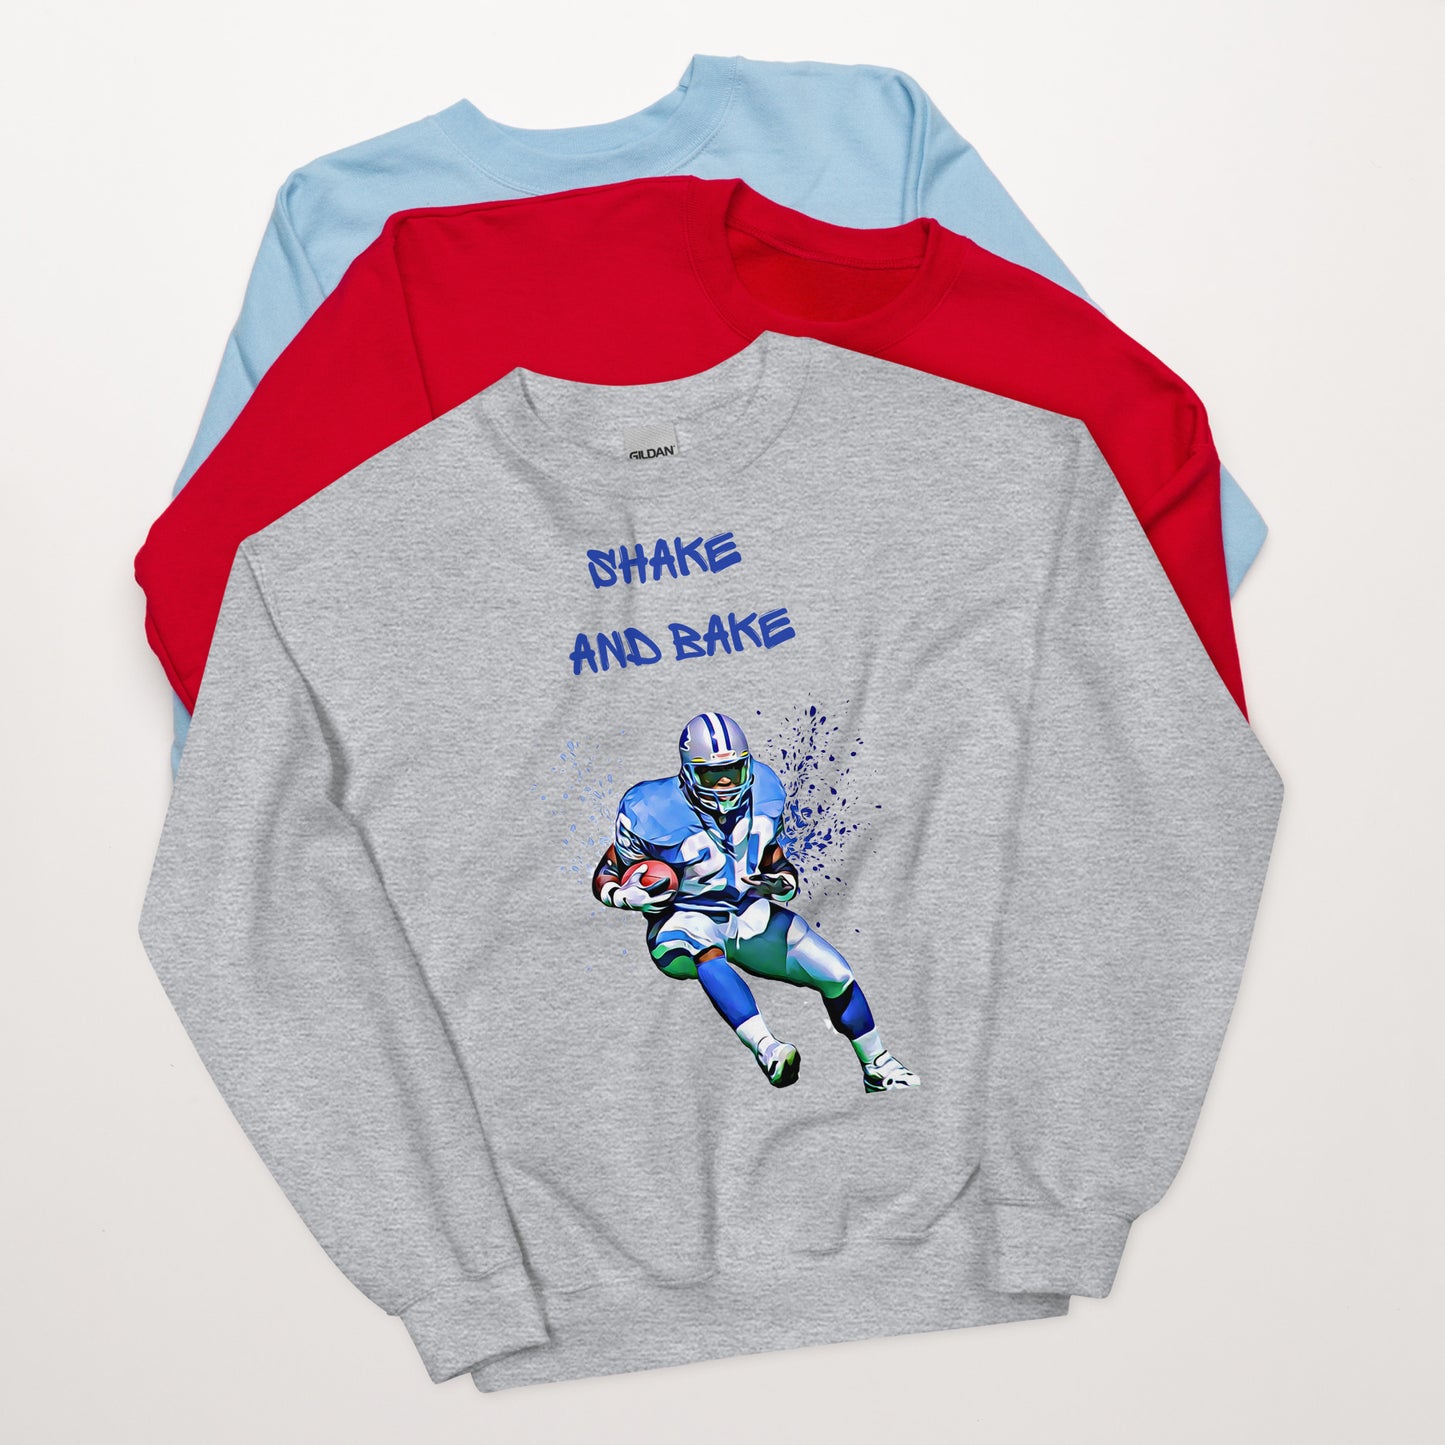 Barry Sanders Shake and Bake Sweatshirt